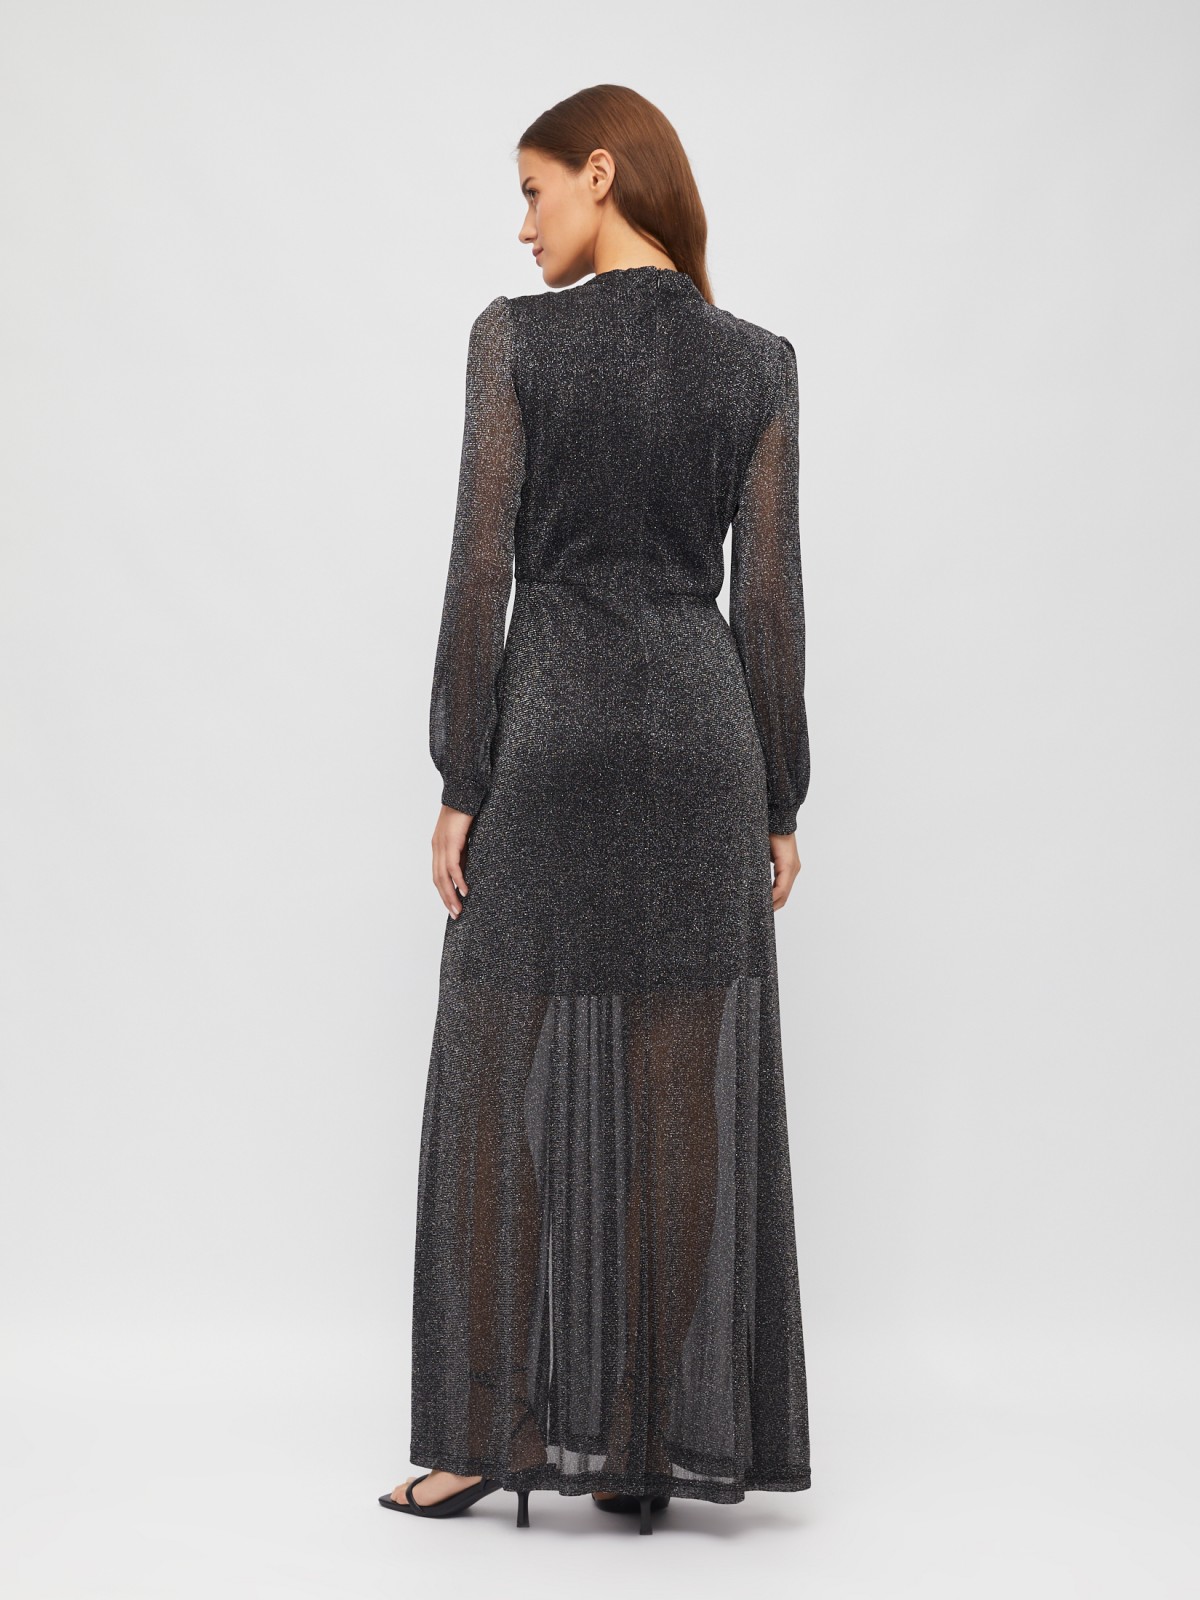 Полупрозрачное платье макси с разрезом на подоле и люрексом zolla 023458159233, цвет черный, размер S - фото 6